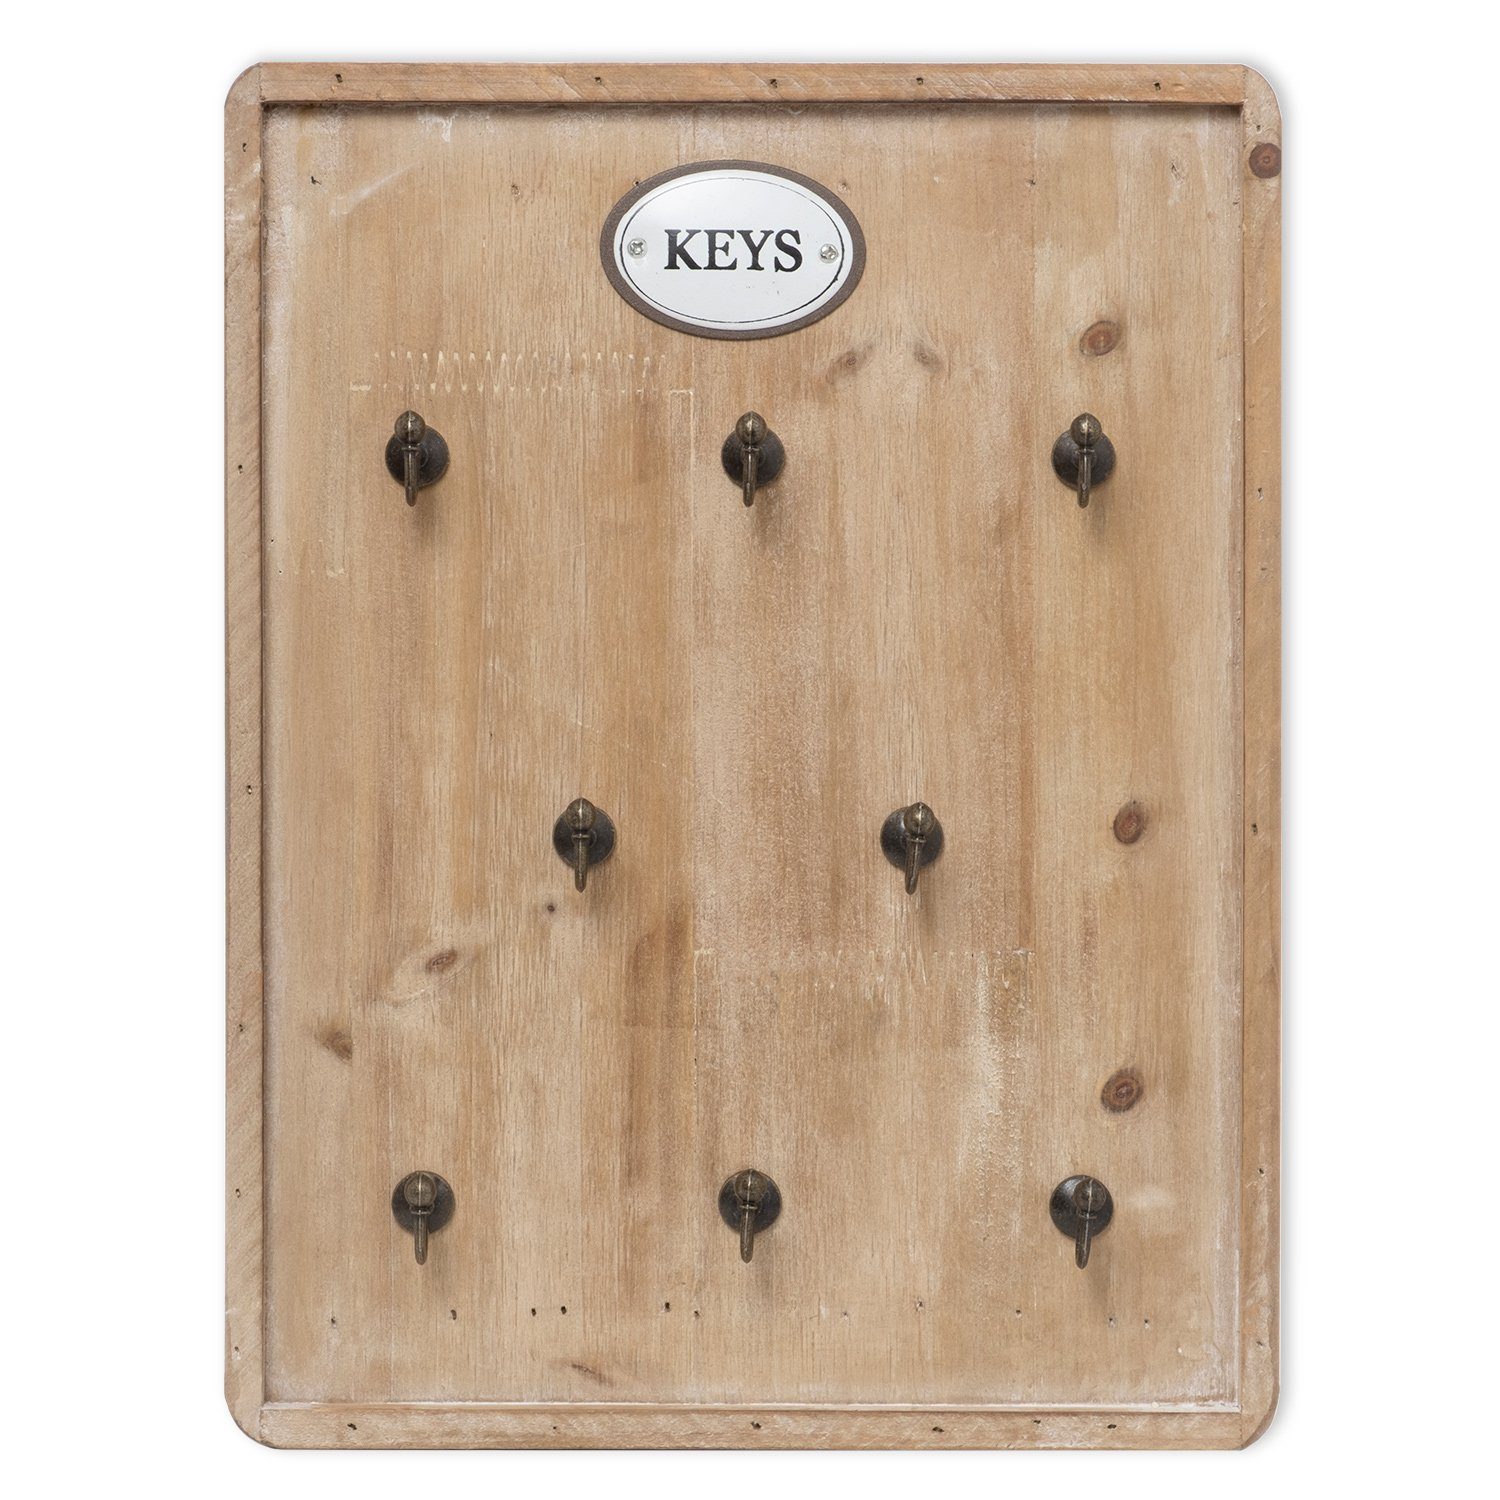 Moritz Schlüsselbrett »27x36cm Keys 8 Haken mit Rahmen braun«,  Schlüsselkasten Vintage Schlüsselbox Schlüsselleiste Schlüsselhaken  Schlüsselboard online kaufen | OTTO